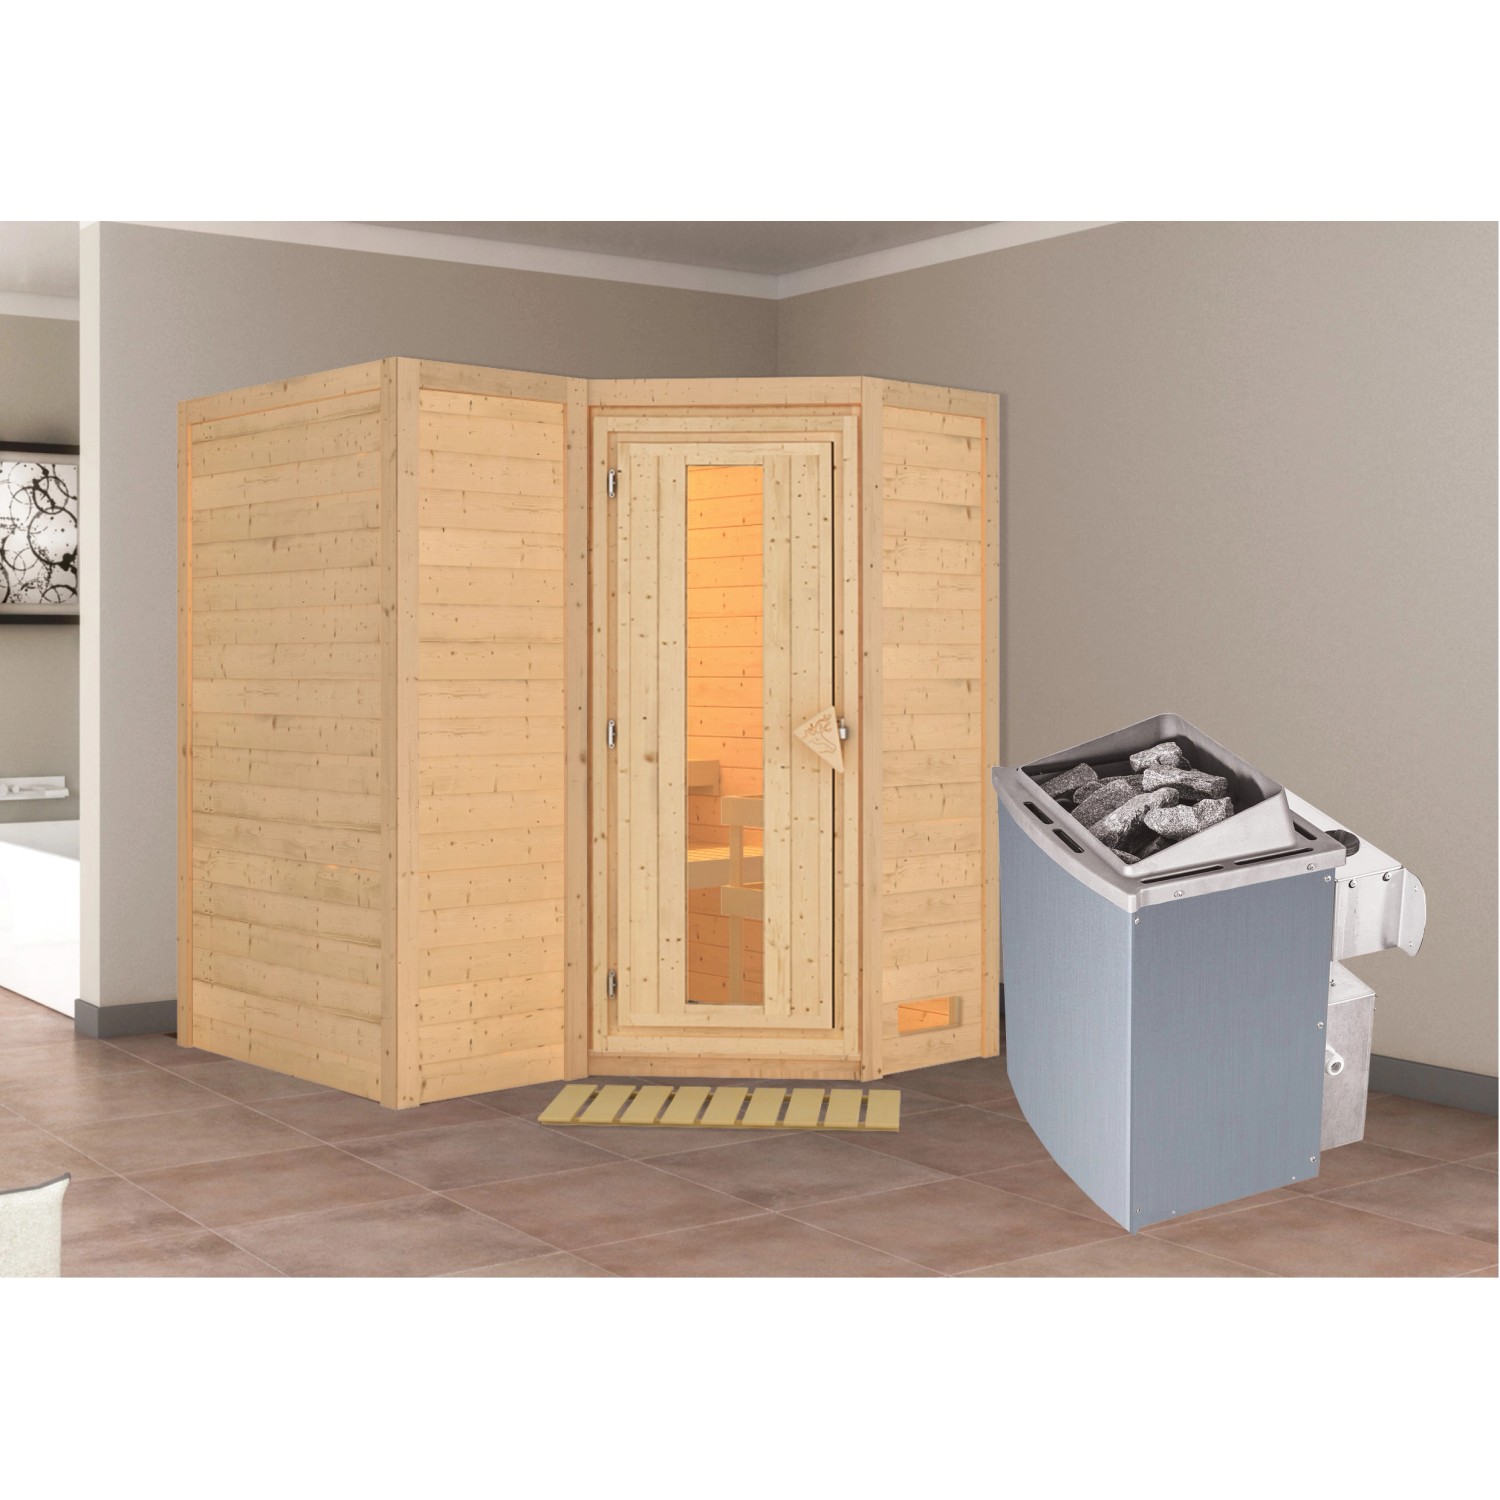 Woodfeeling Sauna-Set Steena 1 inkl. Ofen 9 kW mit integr. Steuerung, Energ günstig online kaufen